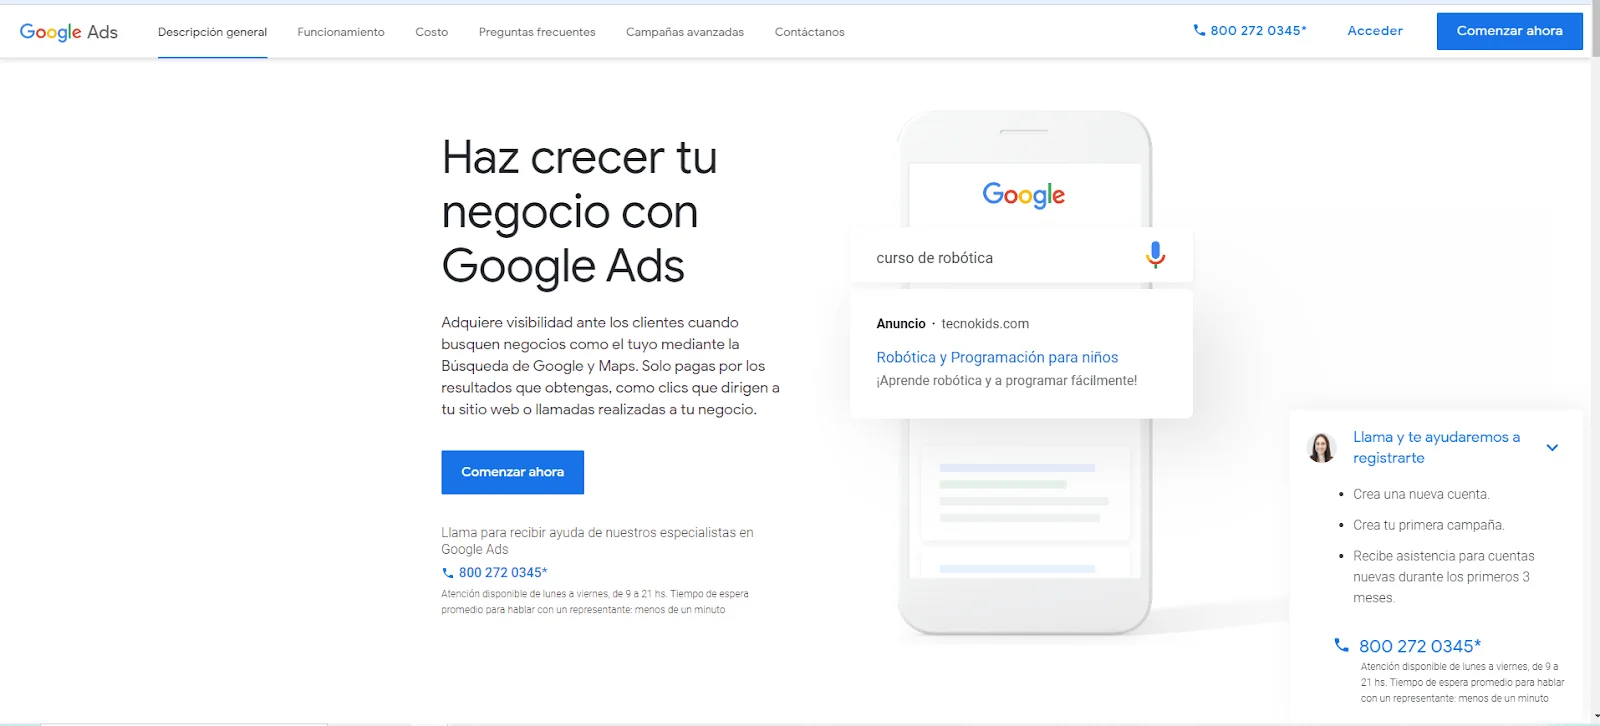 Imagen de la página de inicio de Google Ads para crear anuncios.